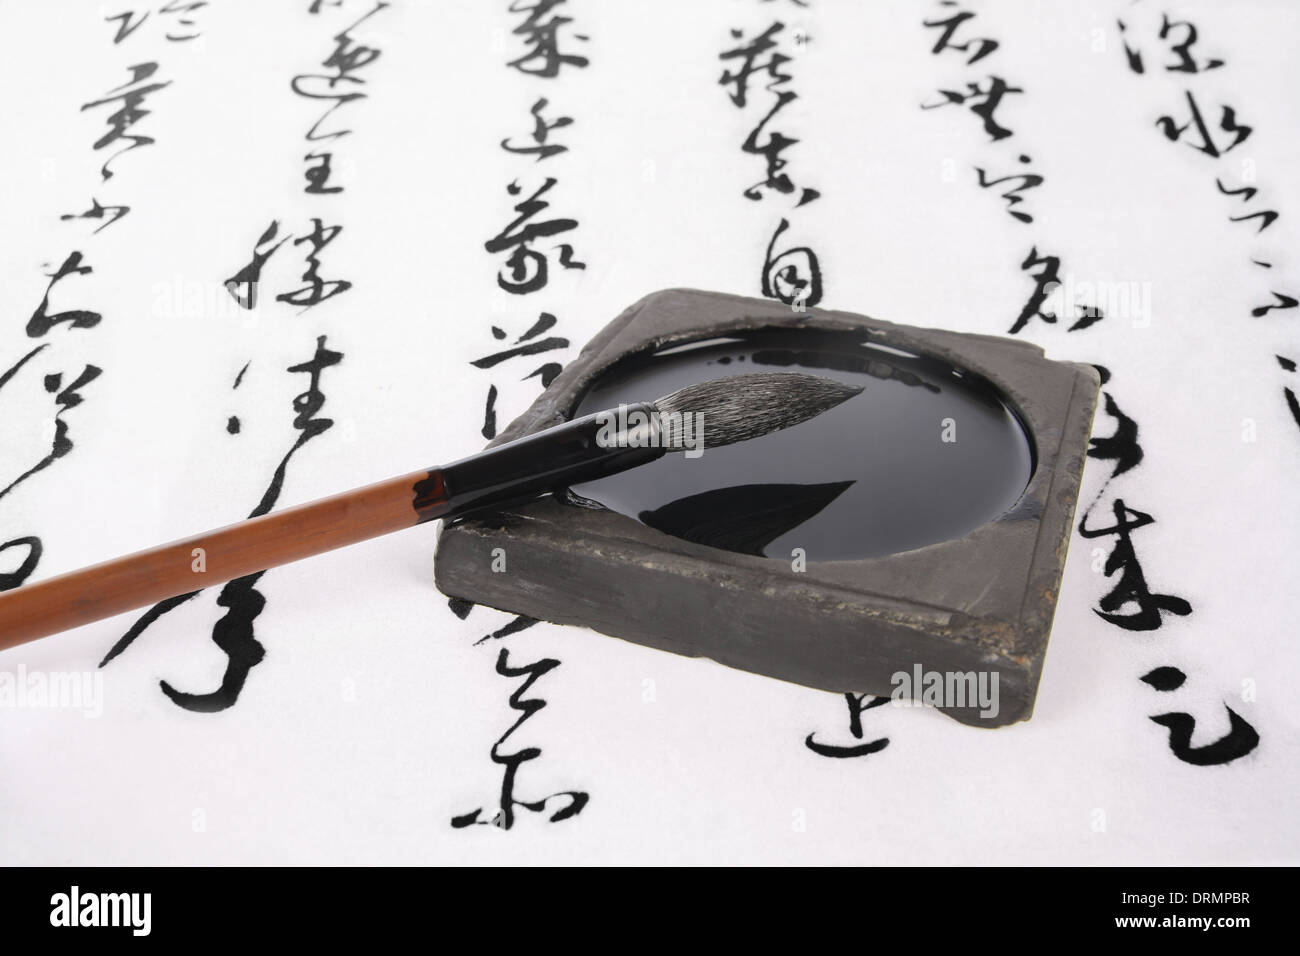 La caligrafía china Foto de stock